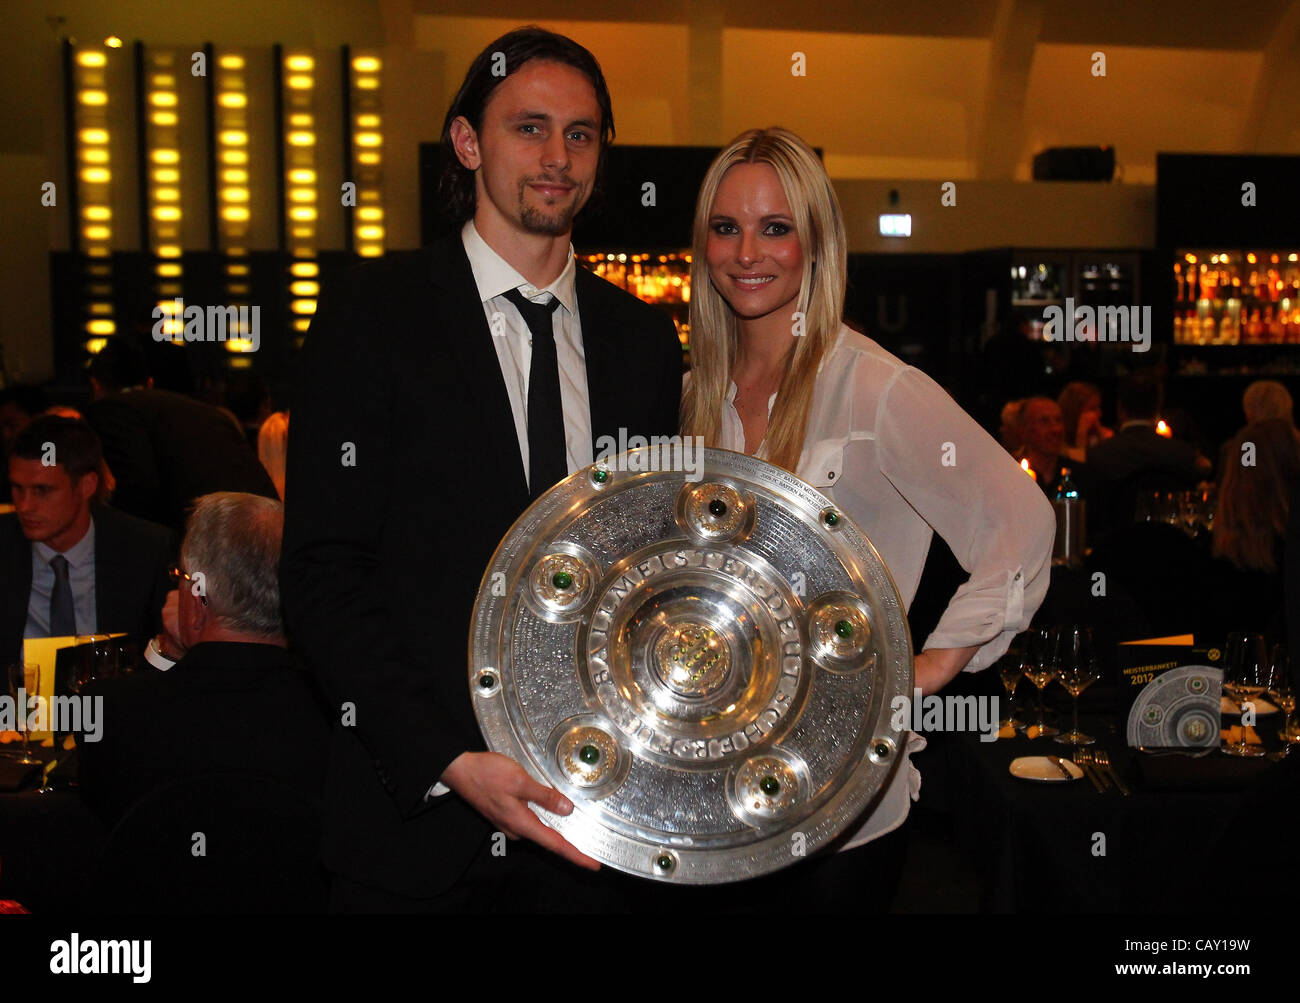 DORTMUND, Germania - 05 Maggio: Neven Subotic e la sua fidanzata Teres posano con il trofeo al ristorante vista il 5 maggio 2012 a Dortmund, Germania. Foto Stock